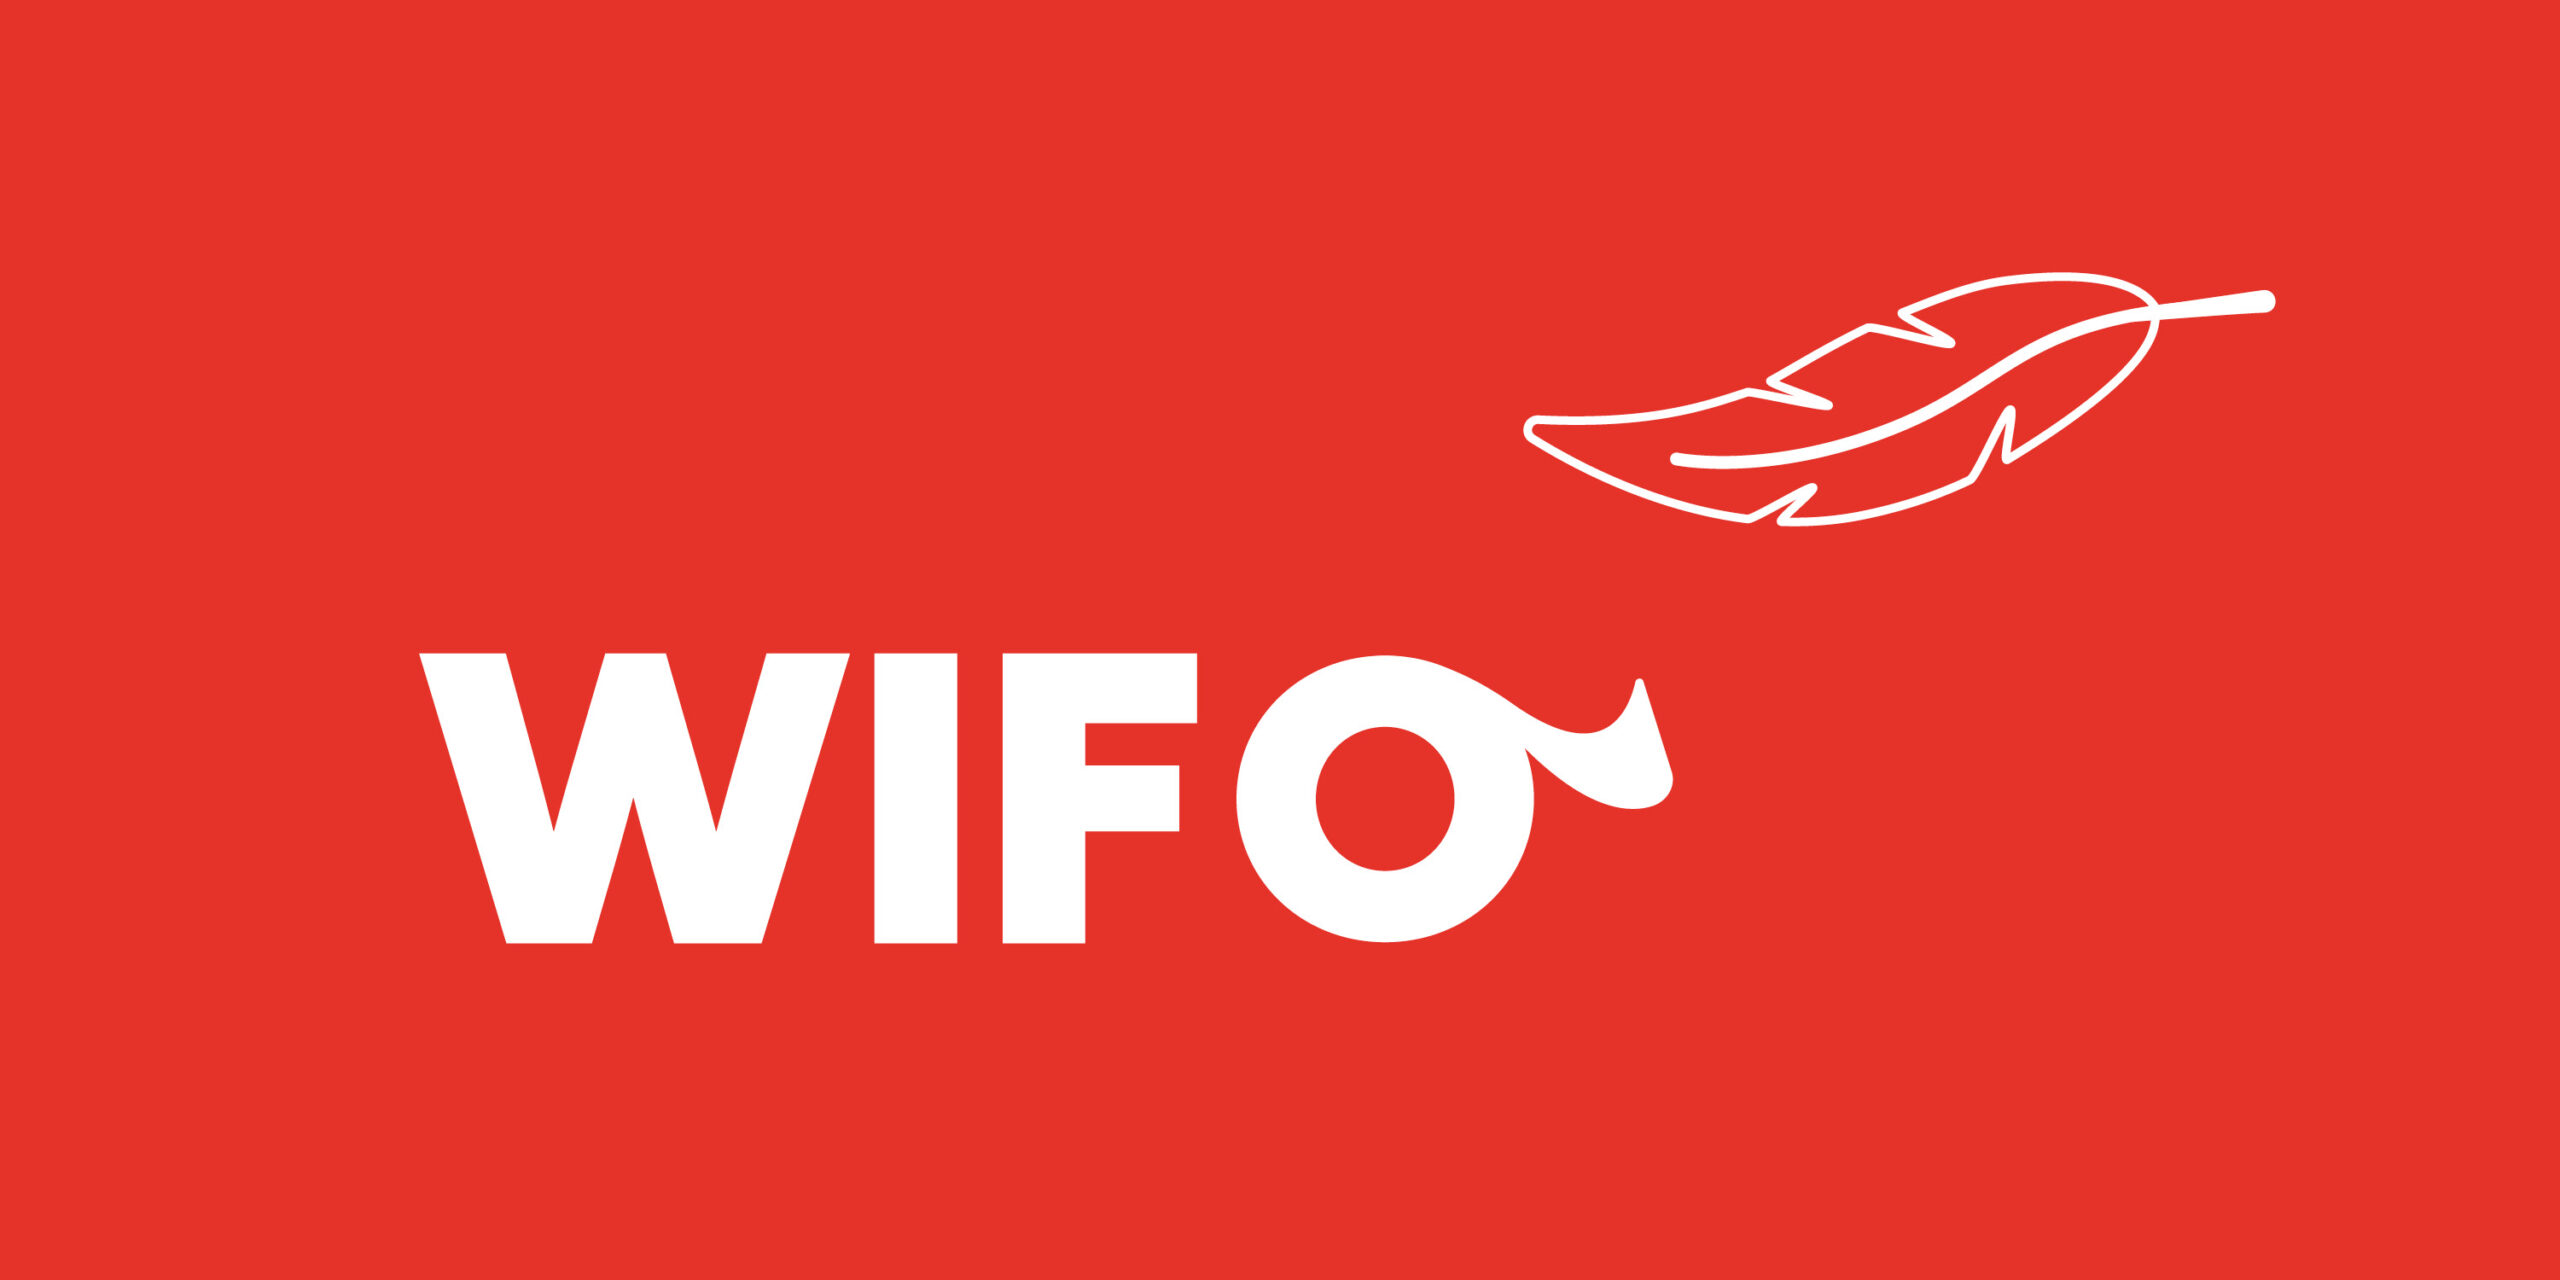 Der Header besteht aus dem weißen WIFO Logo auf rotem Grund mit einer illustrierten Feder in rot mit weißem Konturen.